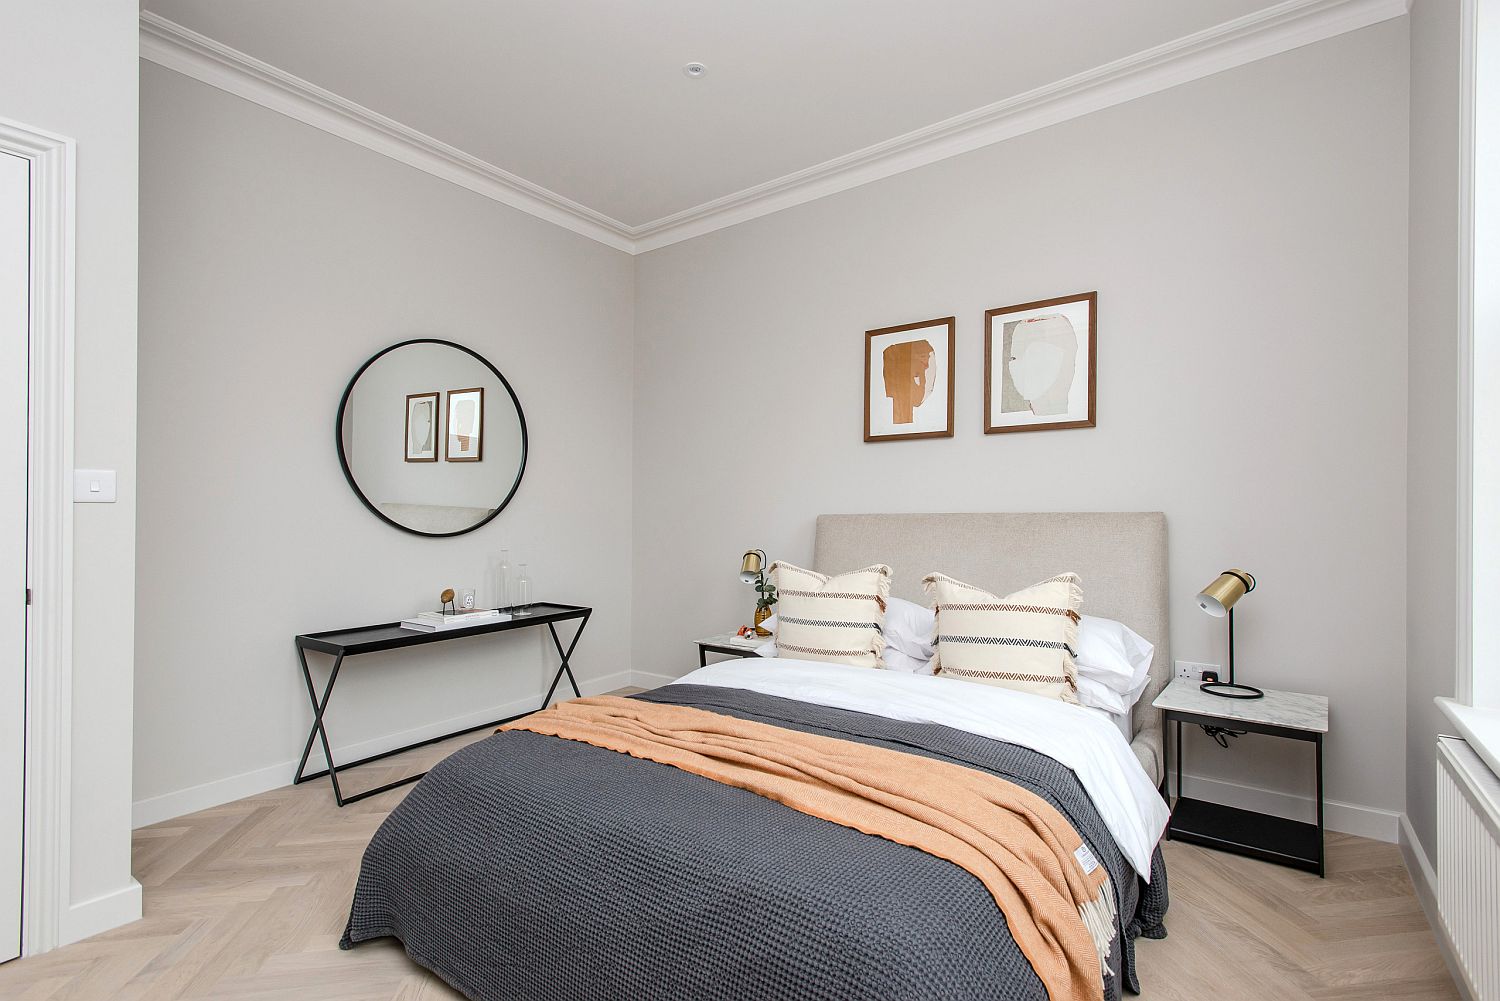 Hình ảnh phòng ngủ gam màu xám trắng chủ đạo với hai tranh treo đầu giường, gương tròn và kệ màu đen ấn tượng